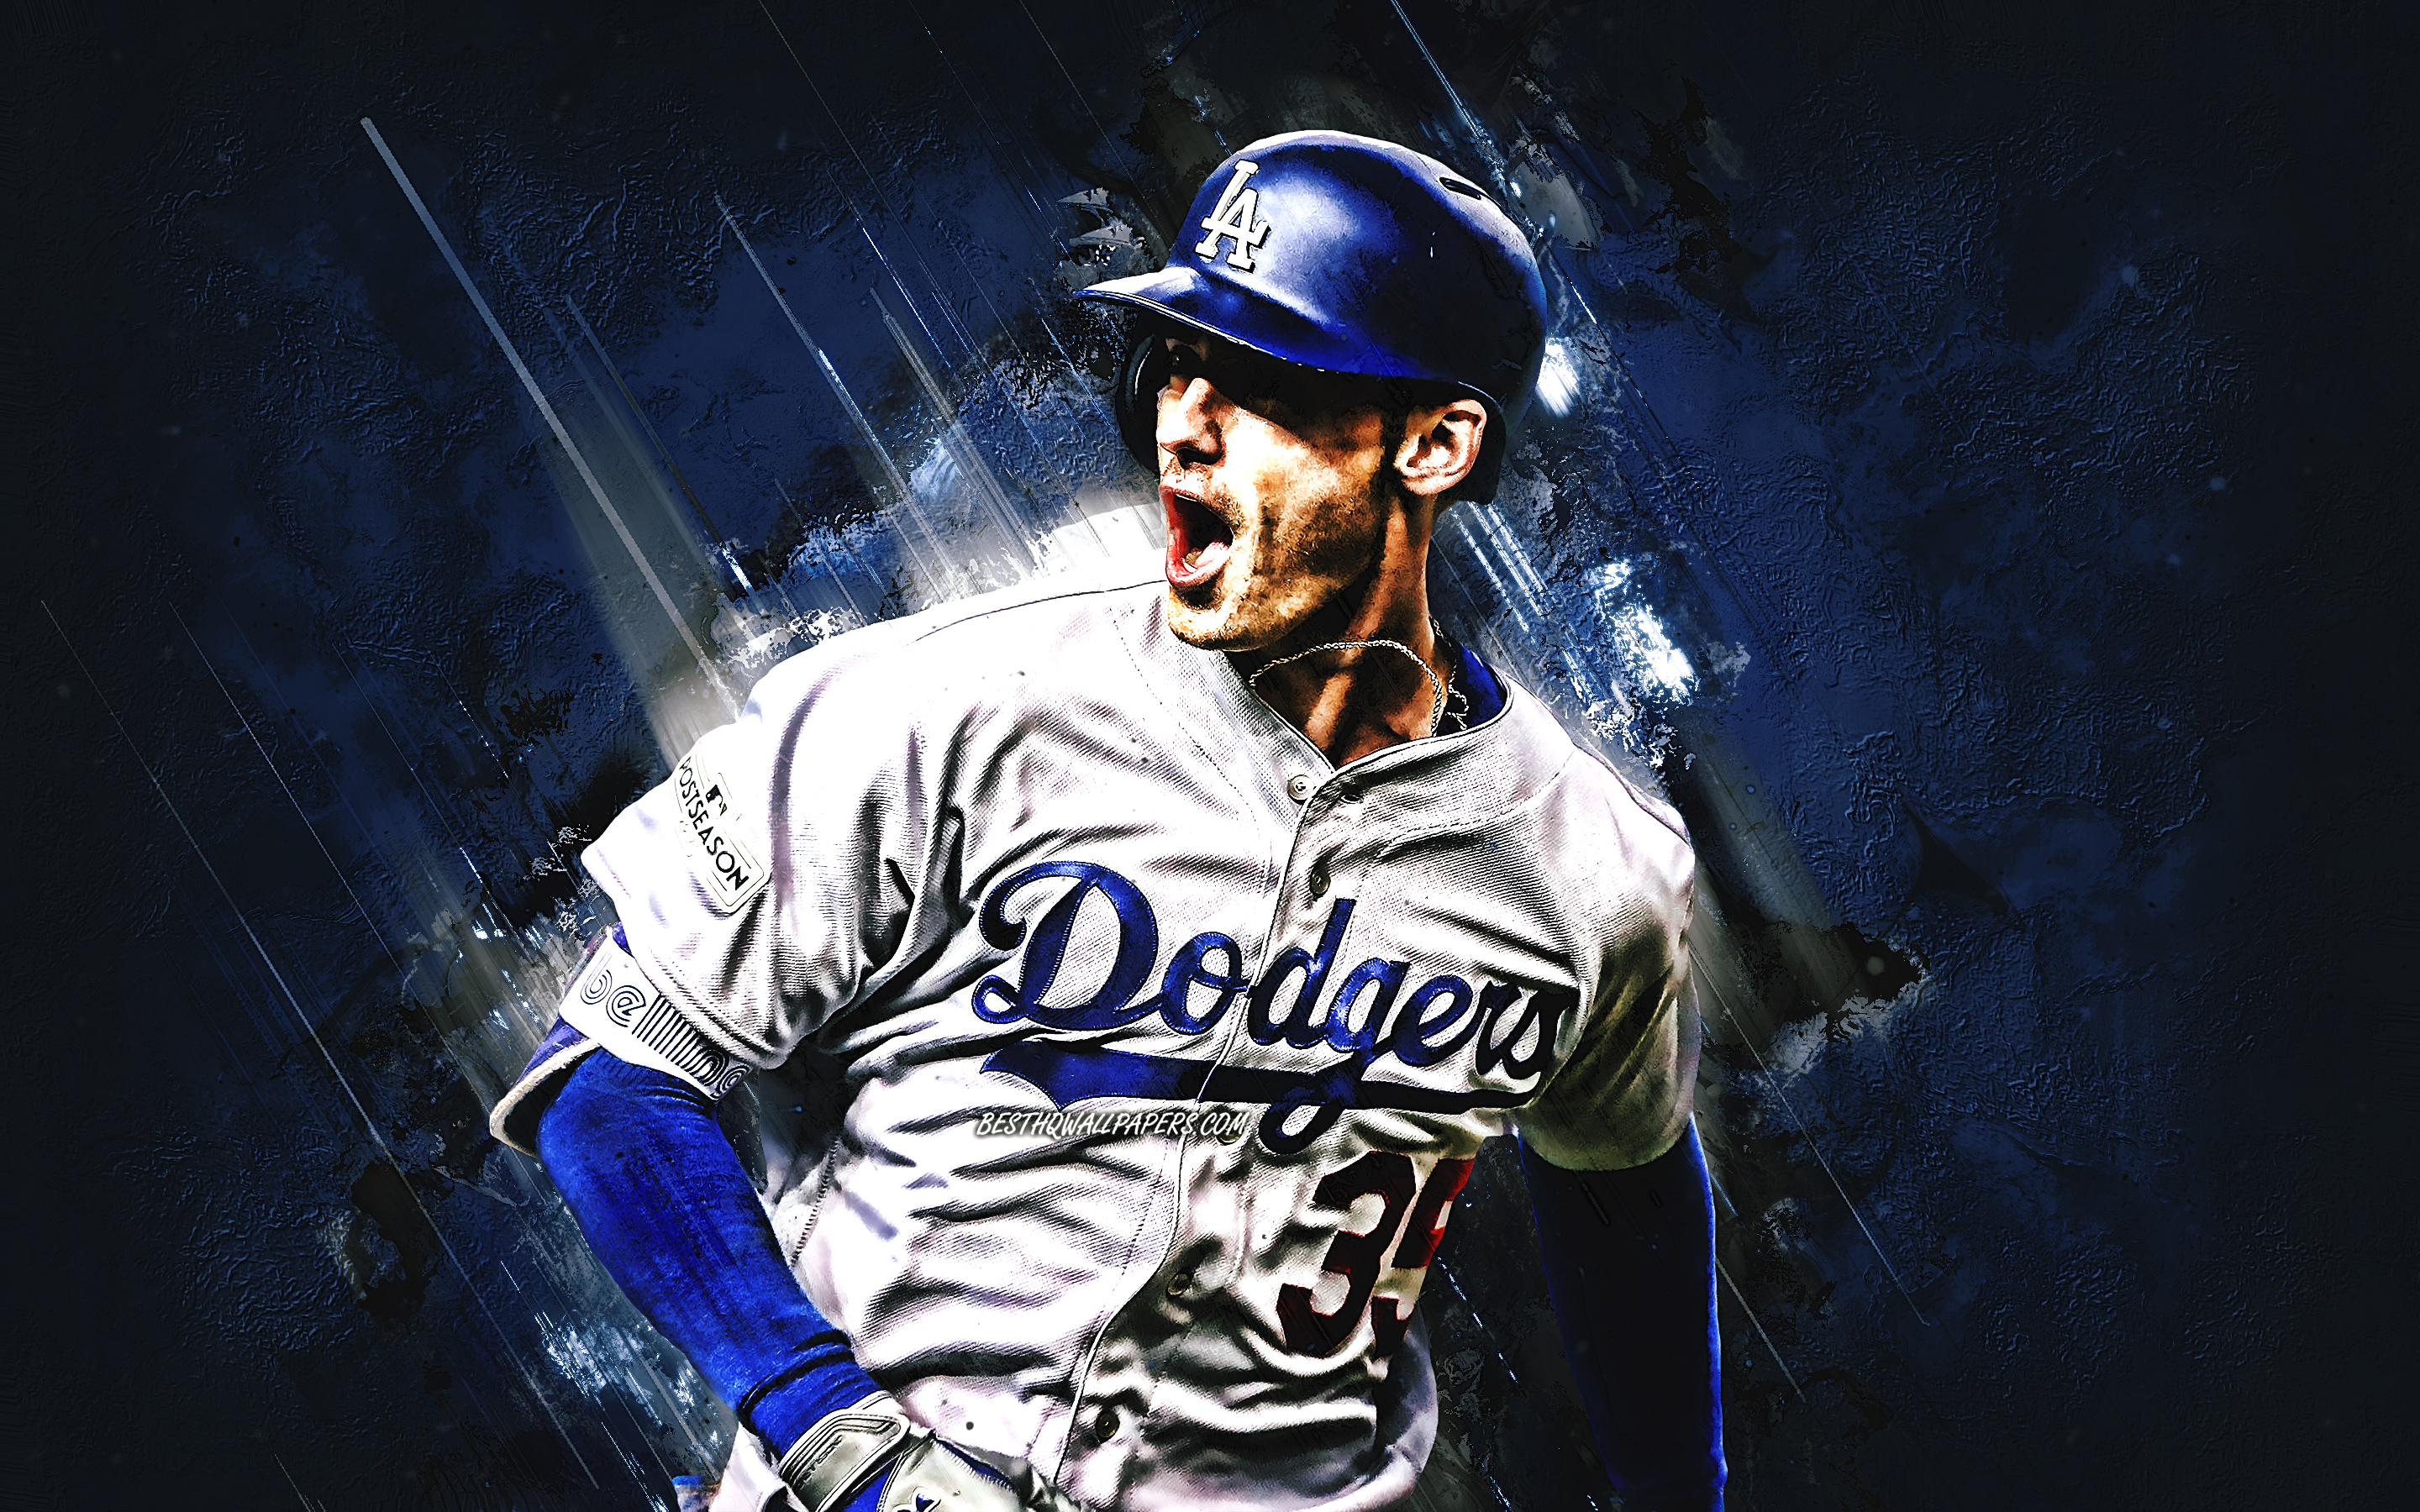 ダウンロード画像 Cody Bellinger ロサンゼルスの脱 Mlb アメリカ野球プレイヤー 肖像 青石の背景 野球 メジャーリーグベースボール 画面の解像度 x1800 壁紙デスクトップ上